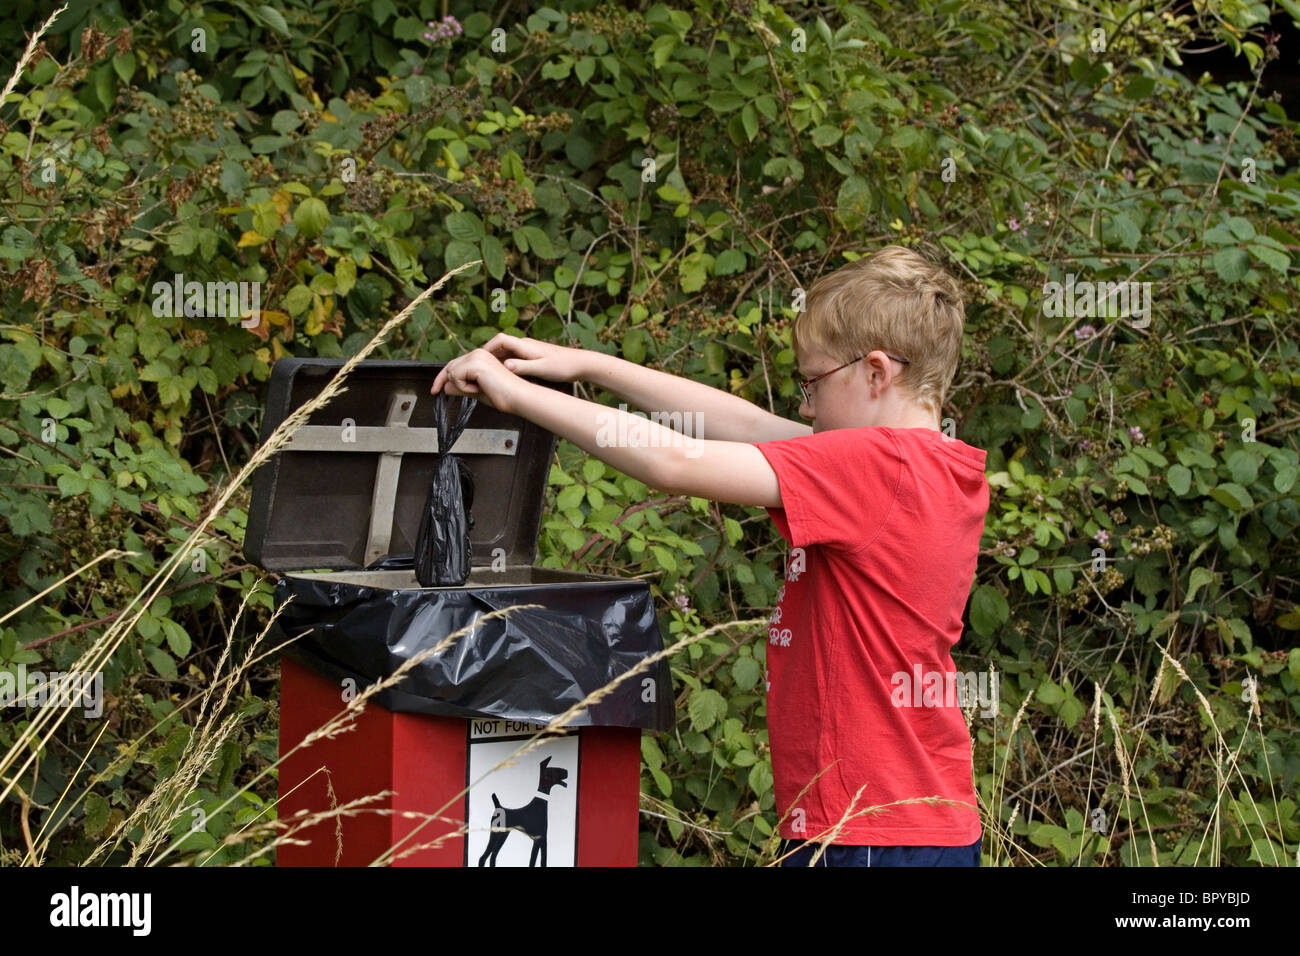 Un ragazzo di undici anni è visto responsabilmente mettendo in sacchi di rifiuti del cane in un cane bidone dei rifiuti Foto Stock